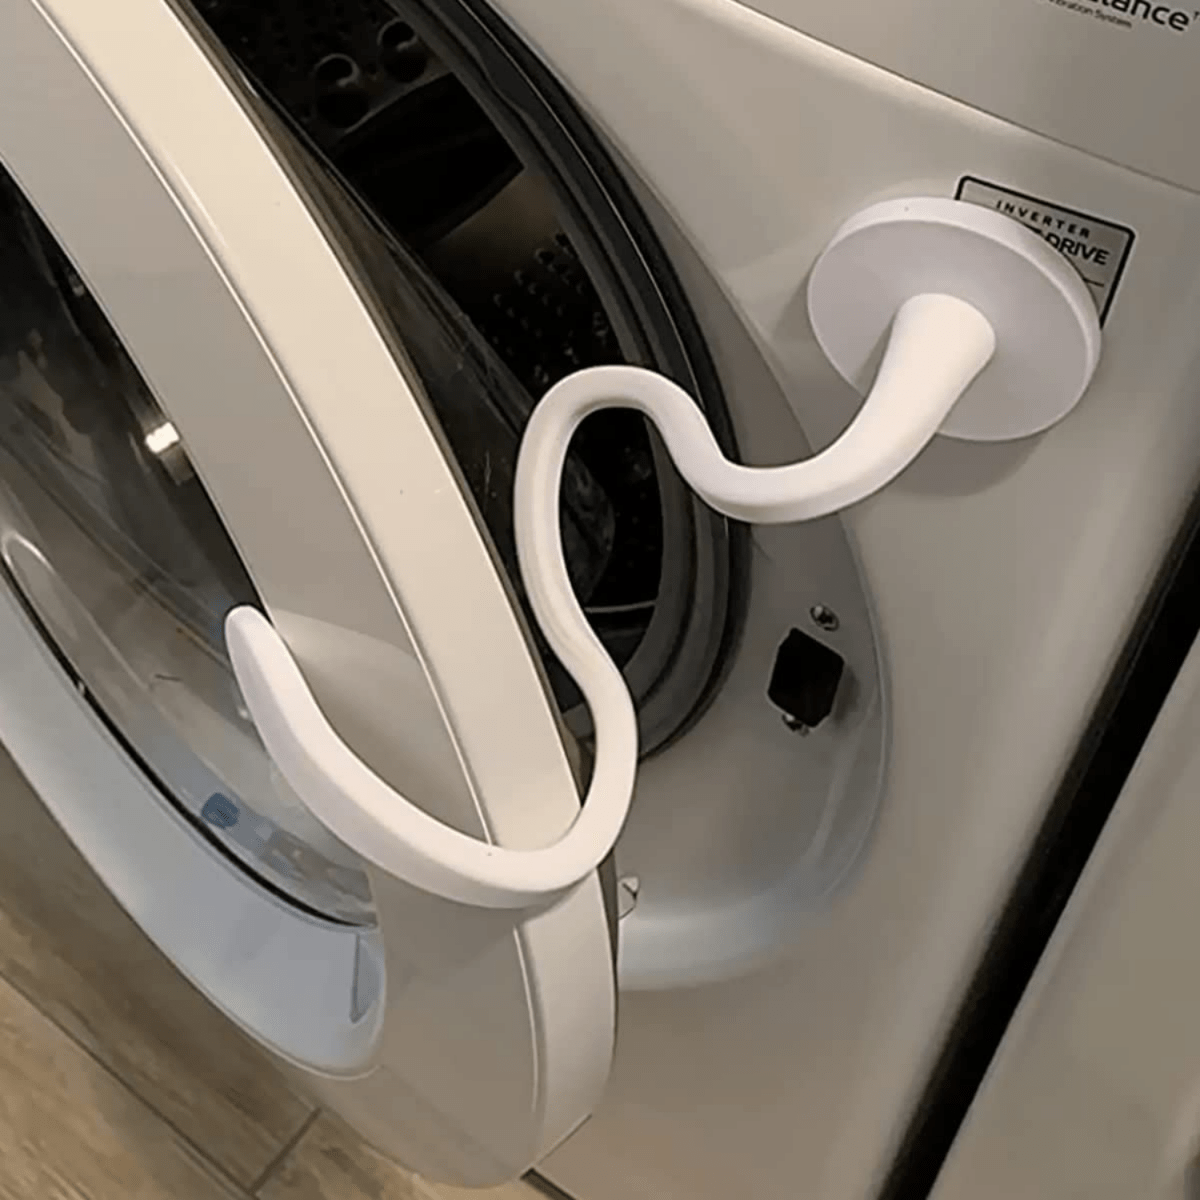 Soporte de puerta de lavadora de carga frontal, soporte magnético para  puerta de lavadora, mantiene la puerta de la lavadora abierta, soporte  flexible